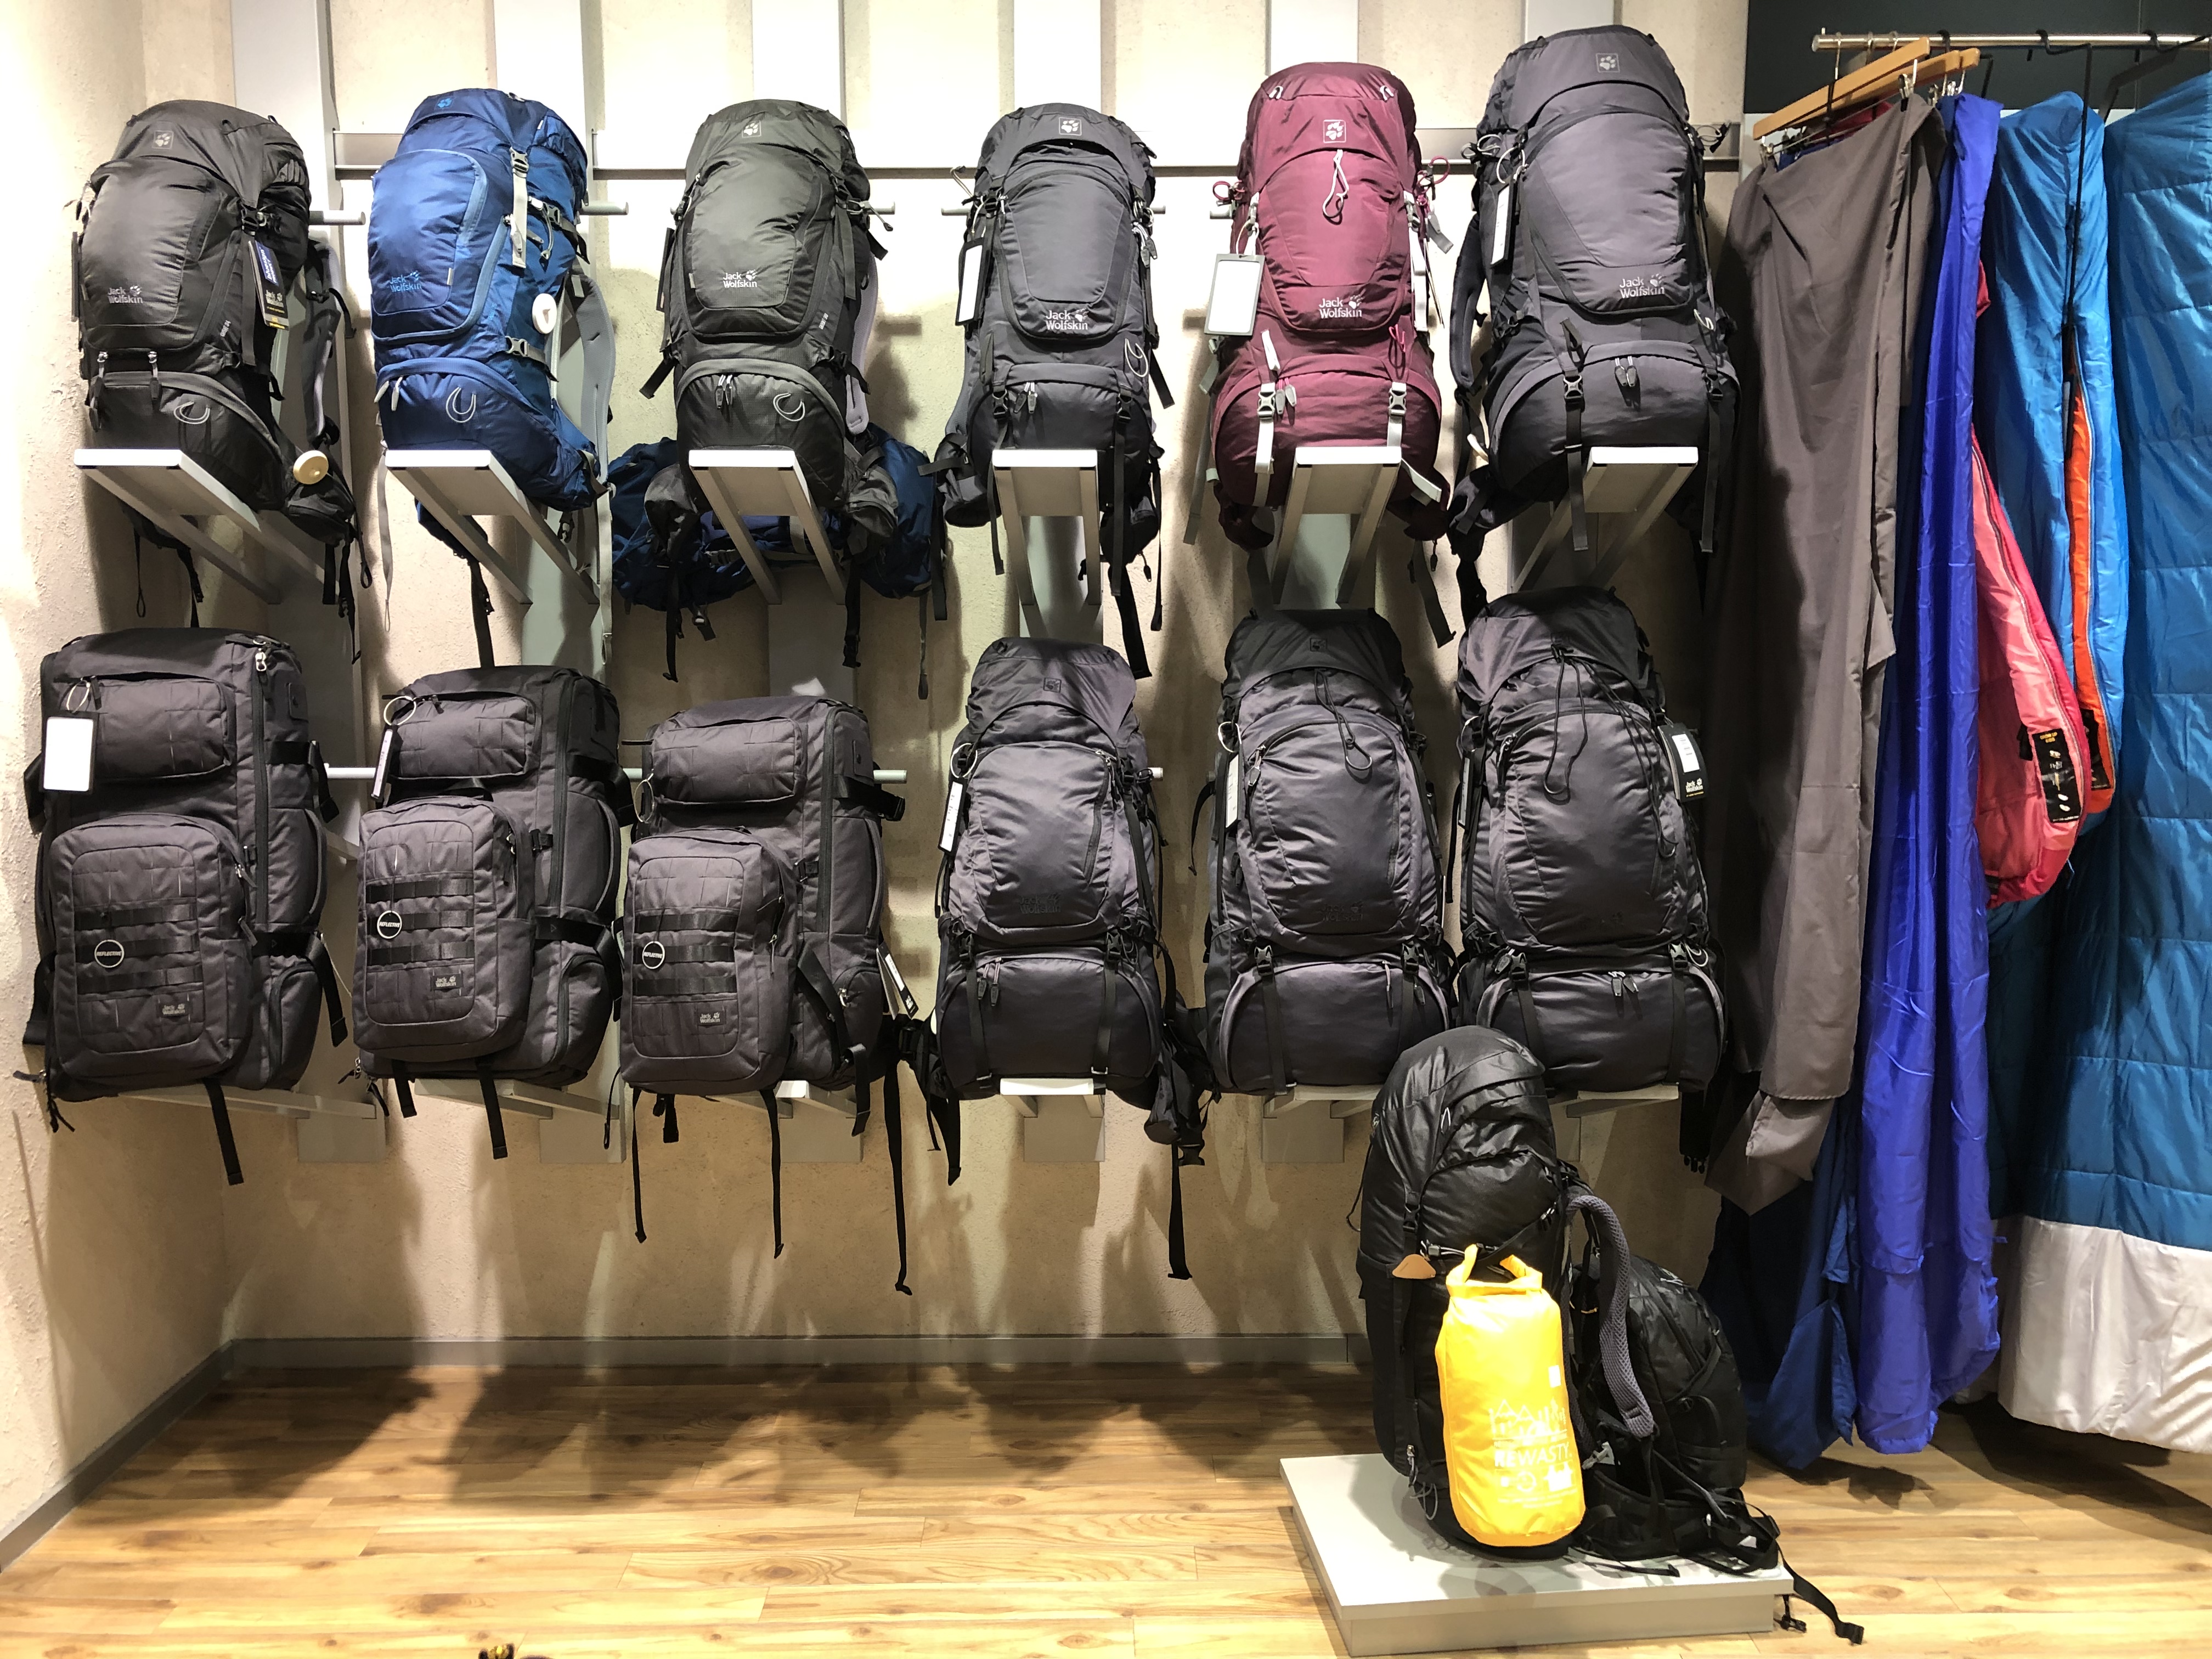 Unsere großen Trekking und Backpacking Rucksäcke für Reisen und Treks. Unsere Schlafsäcke für Damen, Herren und Kinder für sommerliche bis winterliche Temperaturbereiche.